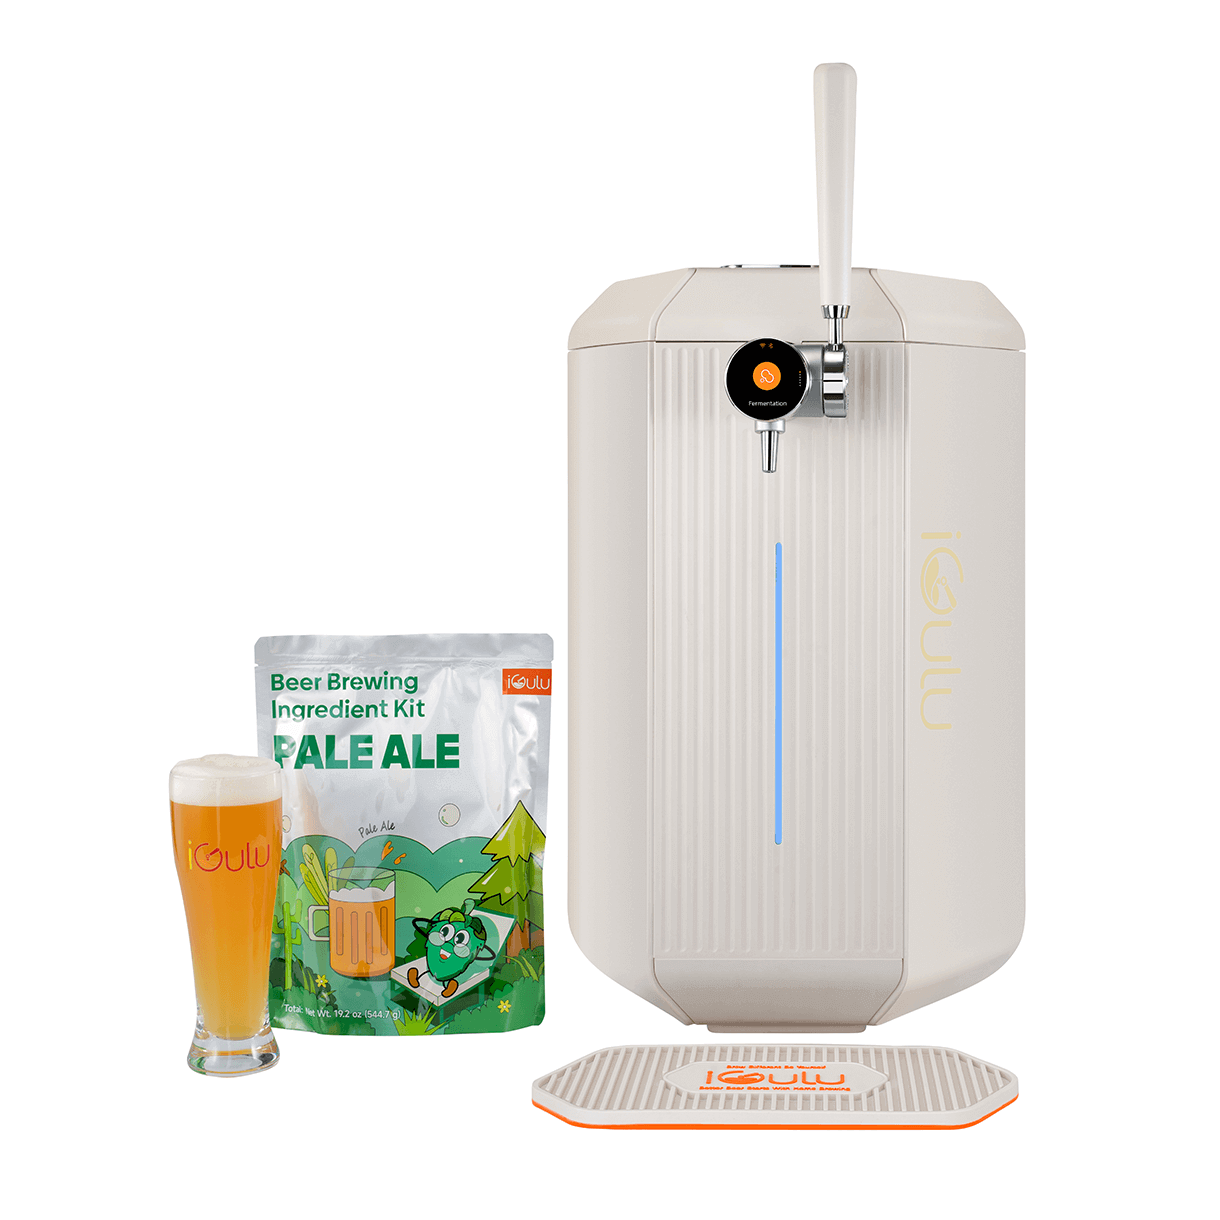 Pale Ale Beer Brewing Ingredient Kit with iGulu F1